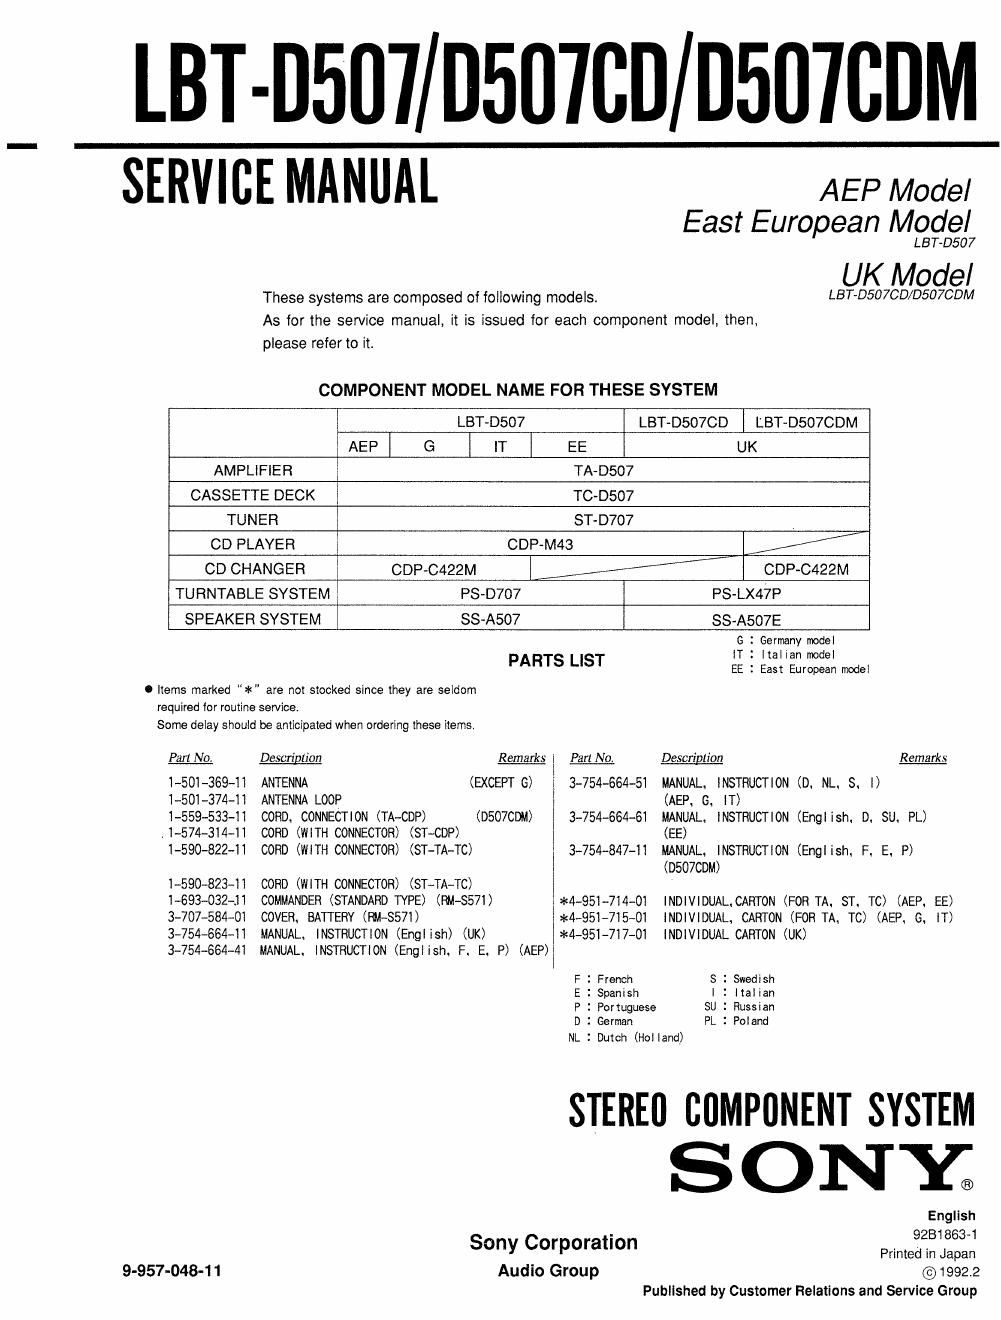 sony lbt d 507 cdm service manual